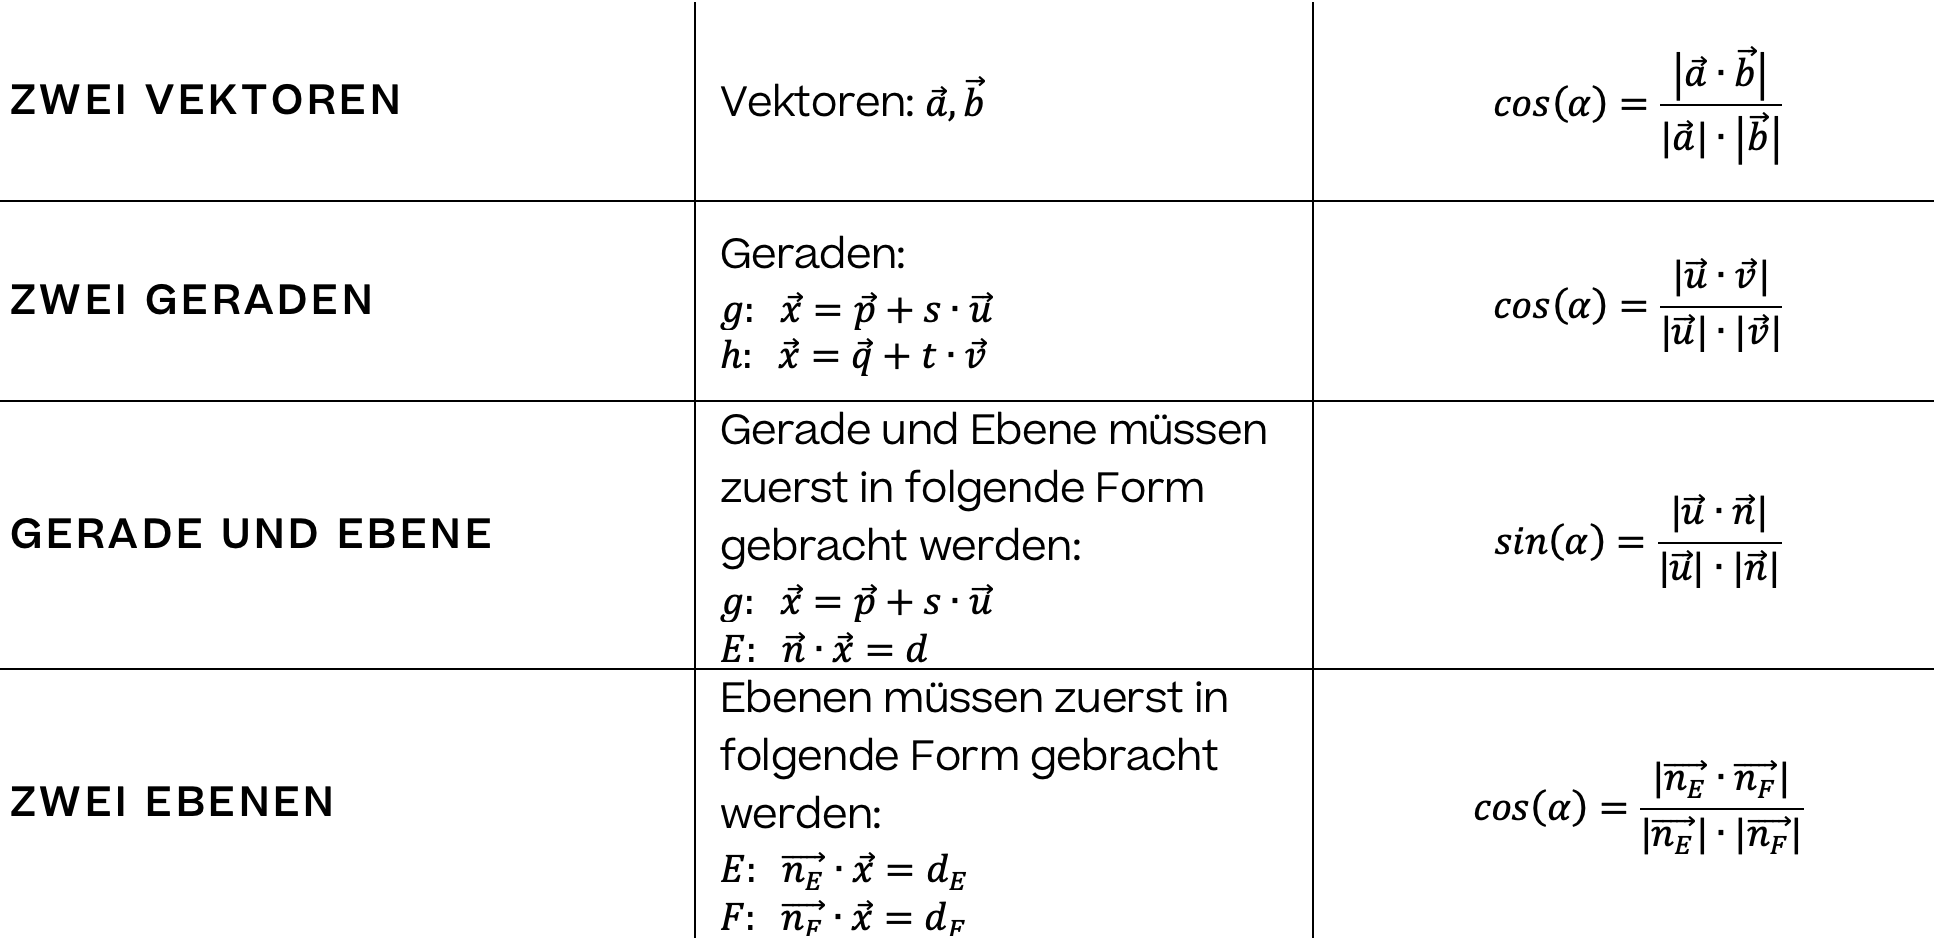 Mathematik; Geraden; 11.-12. Klasse Gymnasium; Zwischenwinkel zwischen zwei Vektoren berechnen